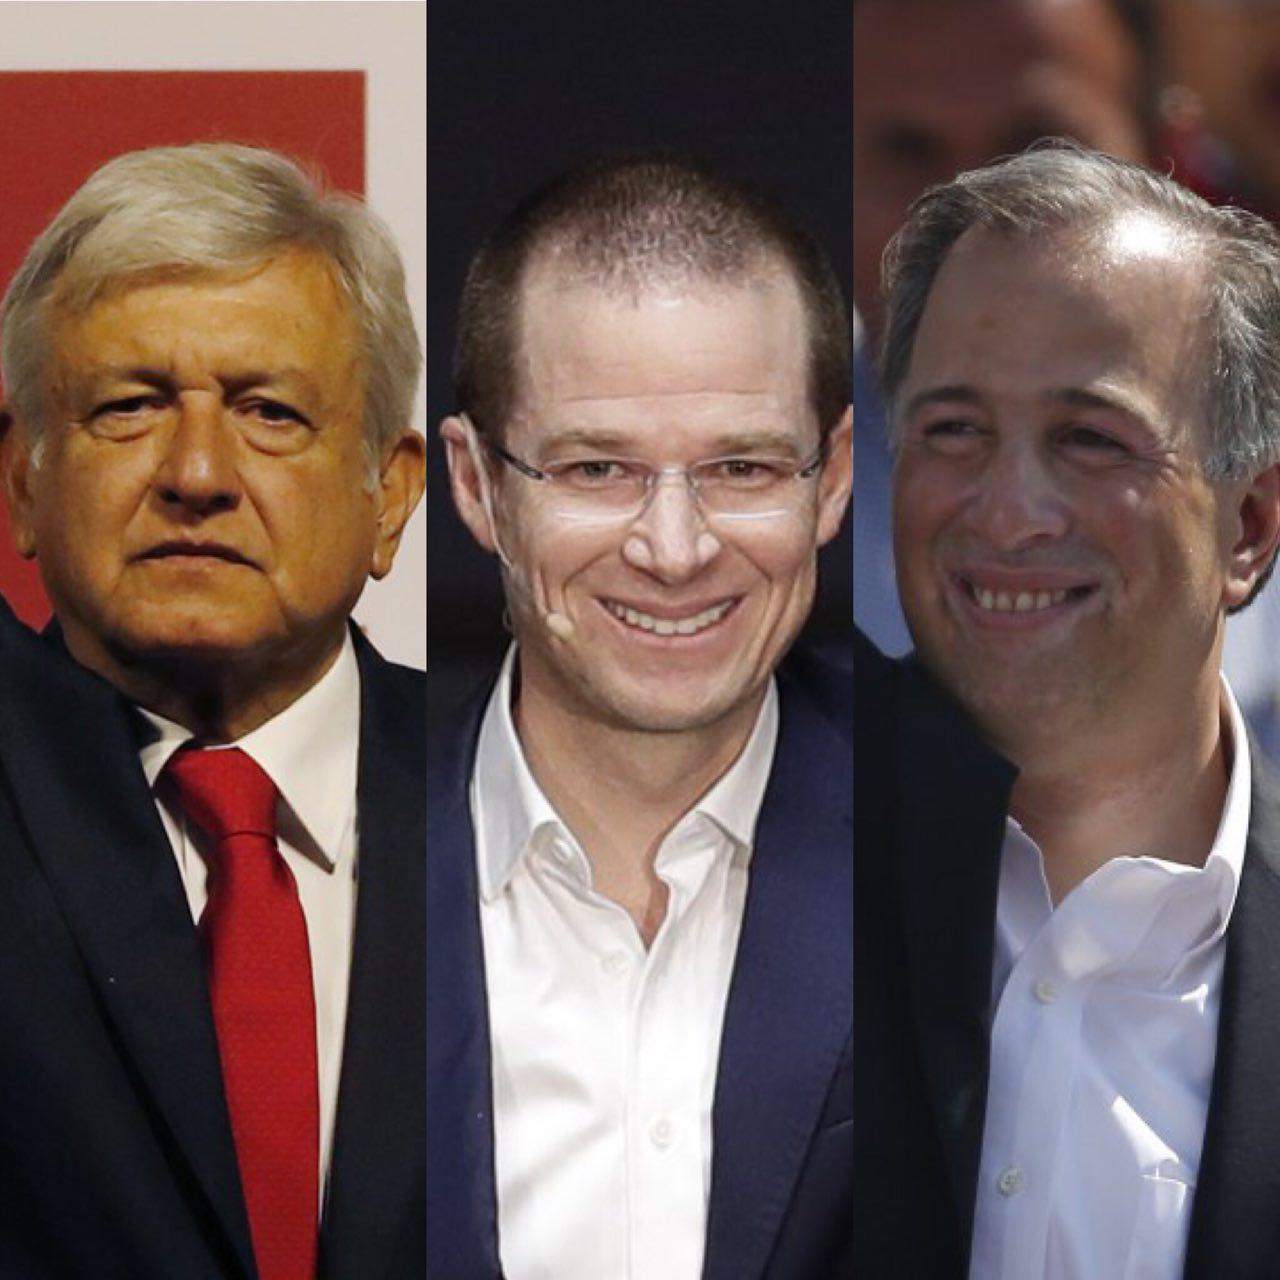 López Obrador arrancará la campaña como favorito, seguido por Anaya y por Meade, según la mayoría de las encuestas de intención del voto para los comicios. (AGENCIAS)